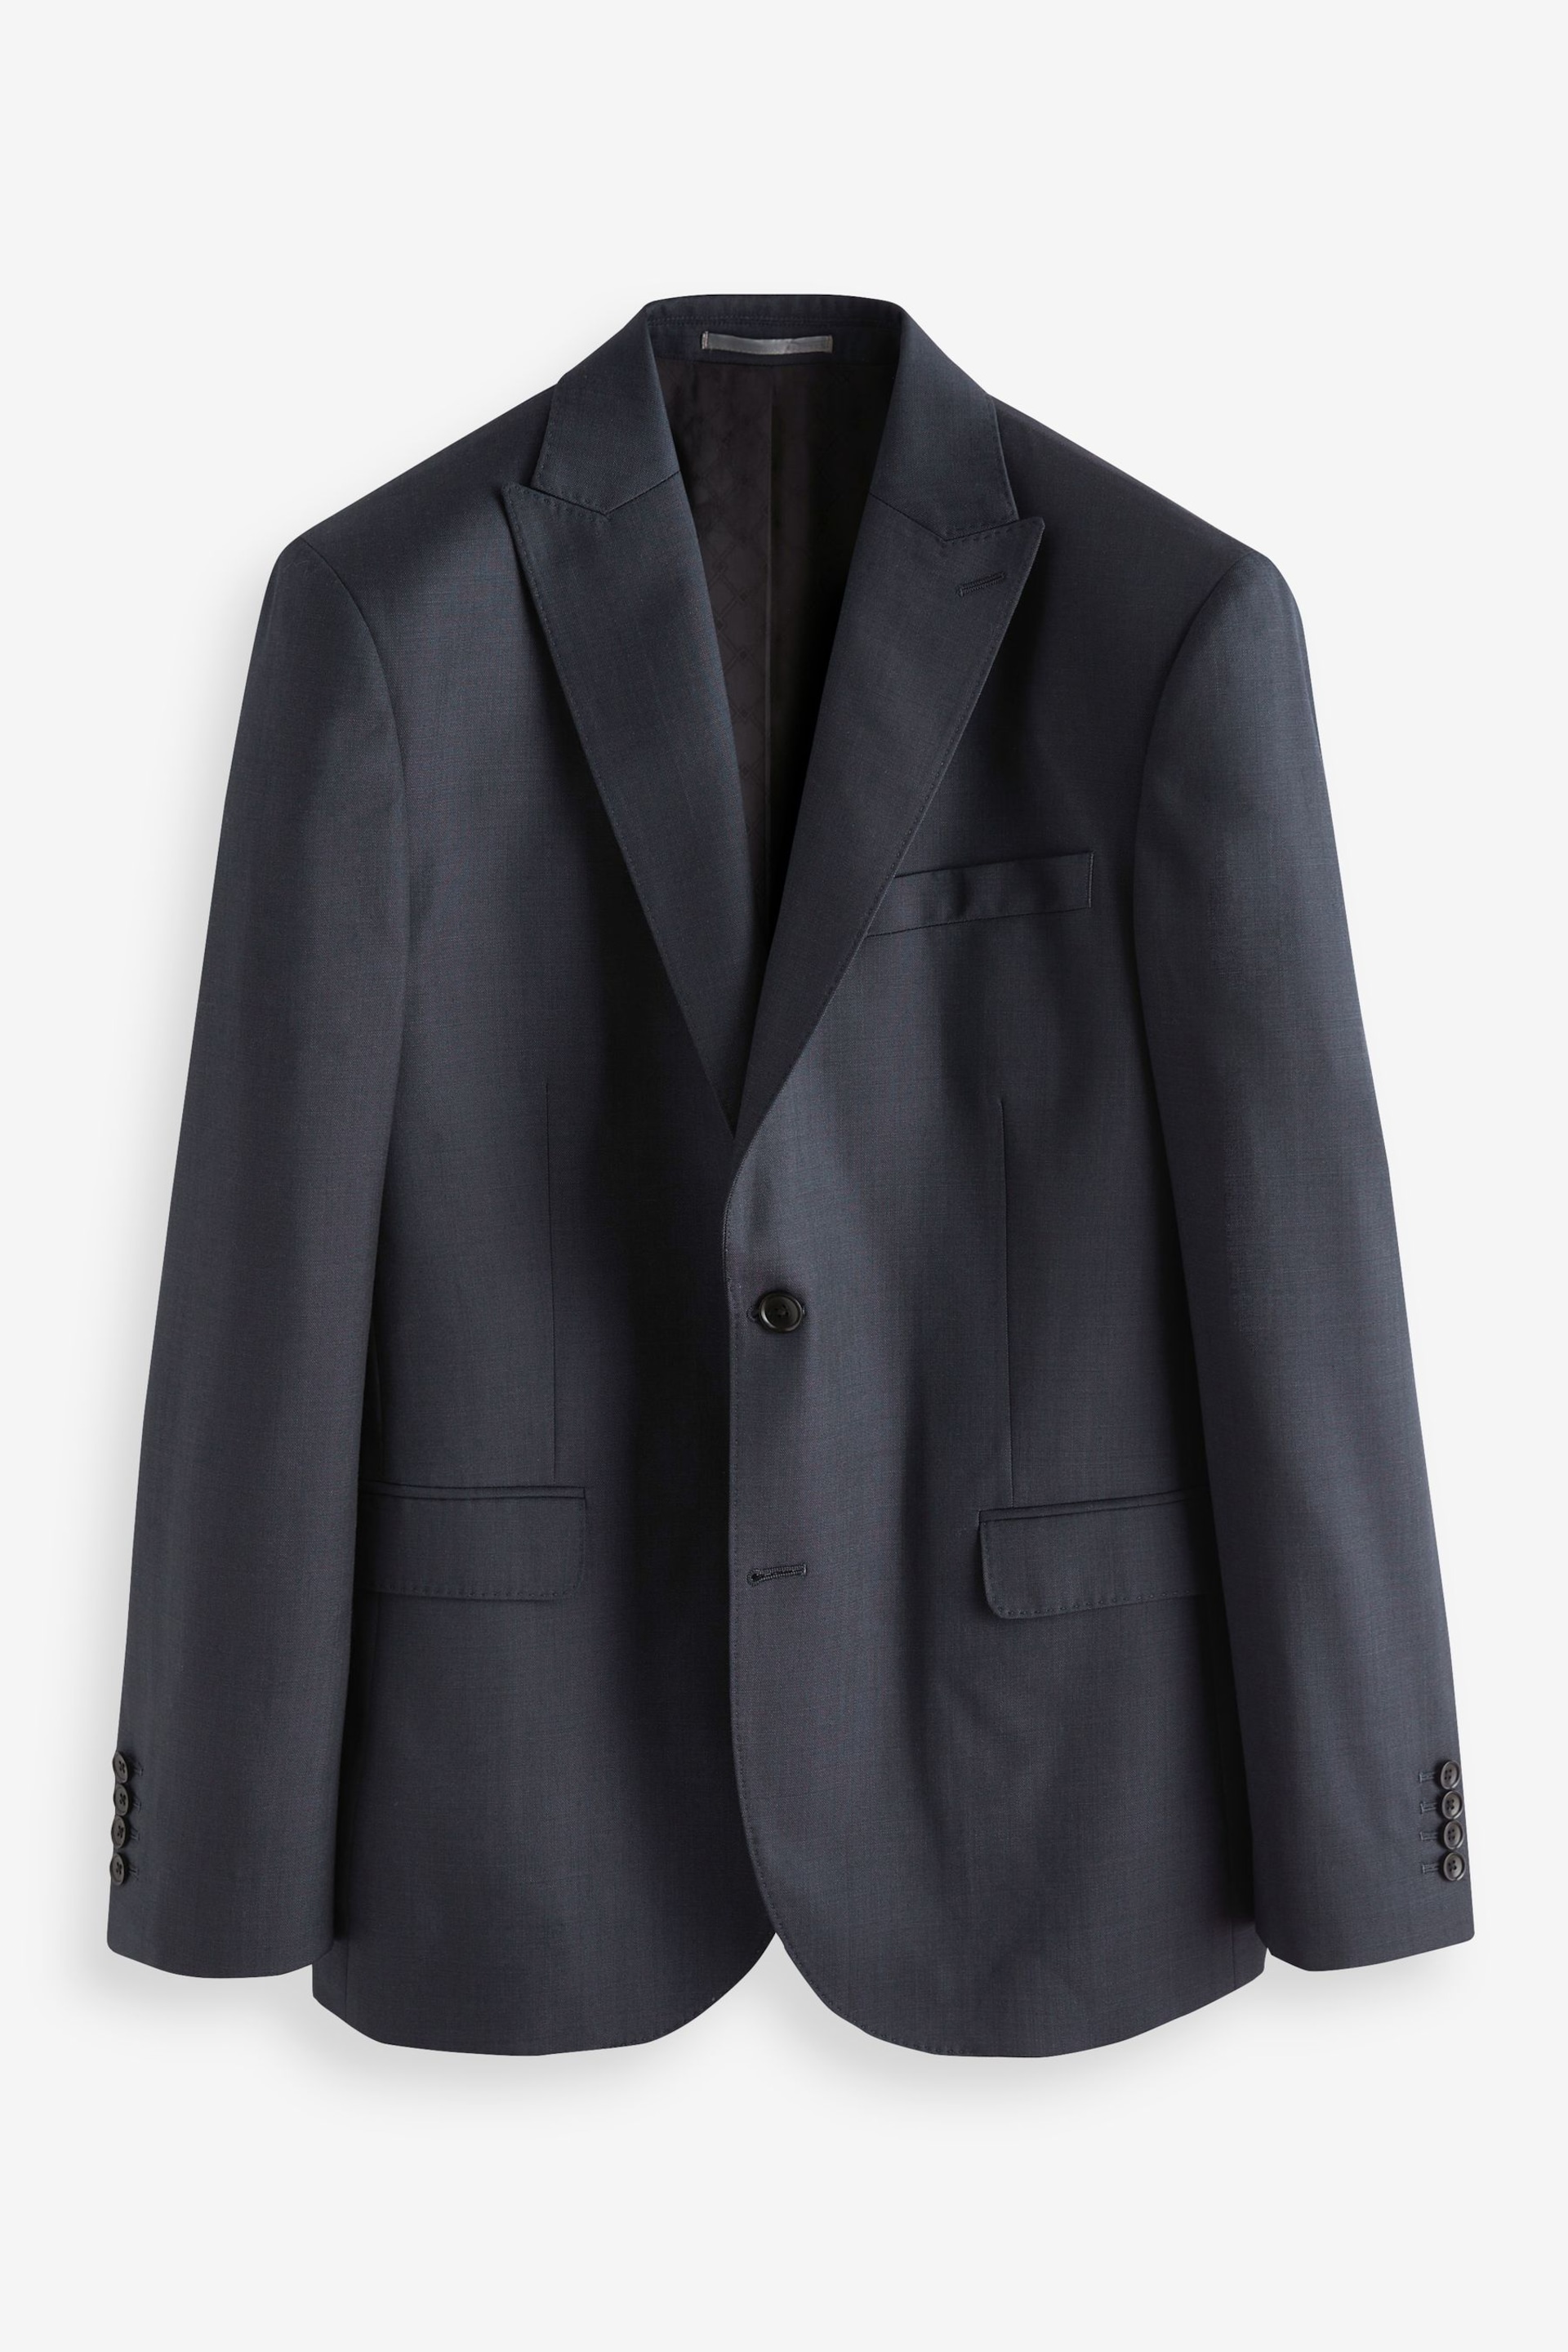 Blue Slim Fit Signature Zignone Italian Fabric Suit Jacket - Image 6 of 12